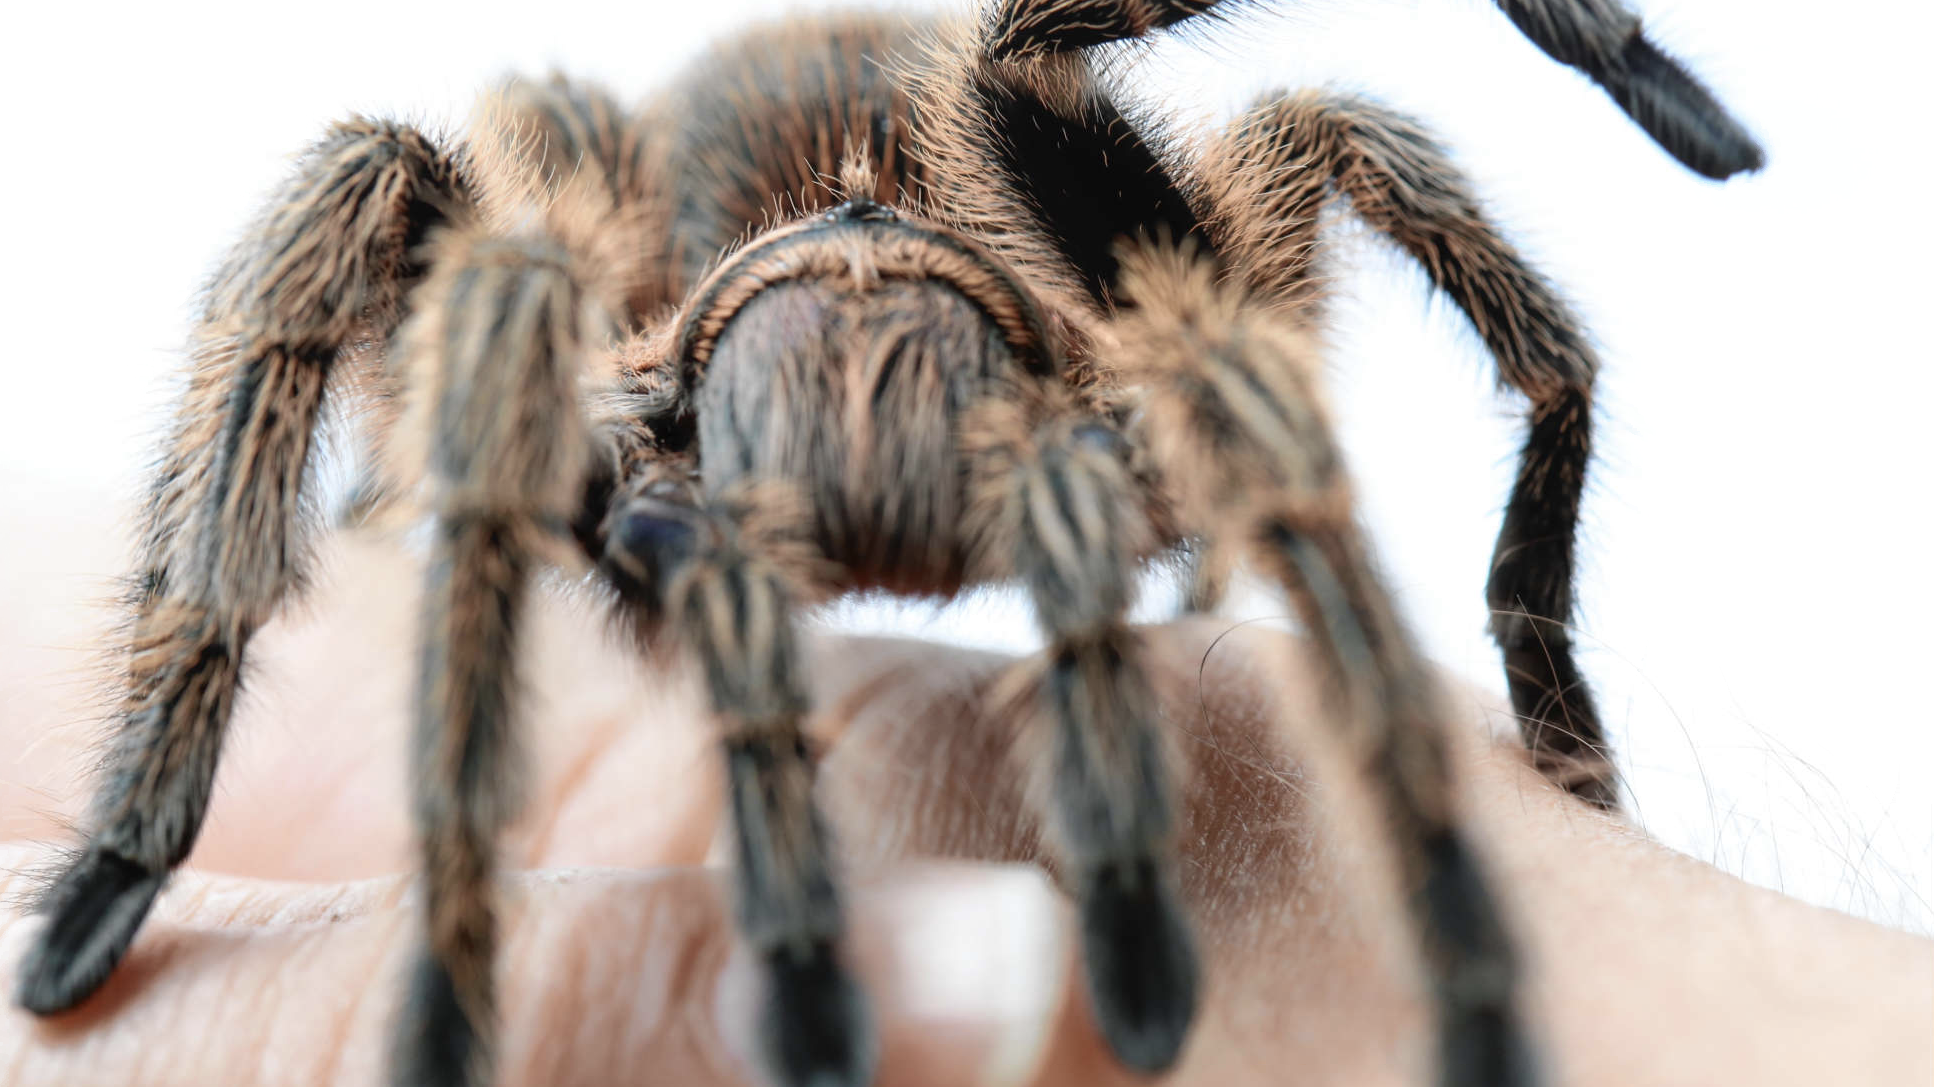 Auch für haarige Spinnen können Patenschaften übernommen werden... (Bild: Evelyn HronekKamerawerk)